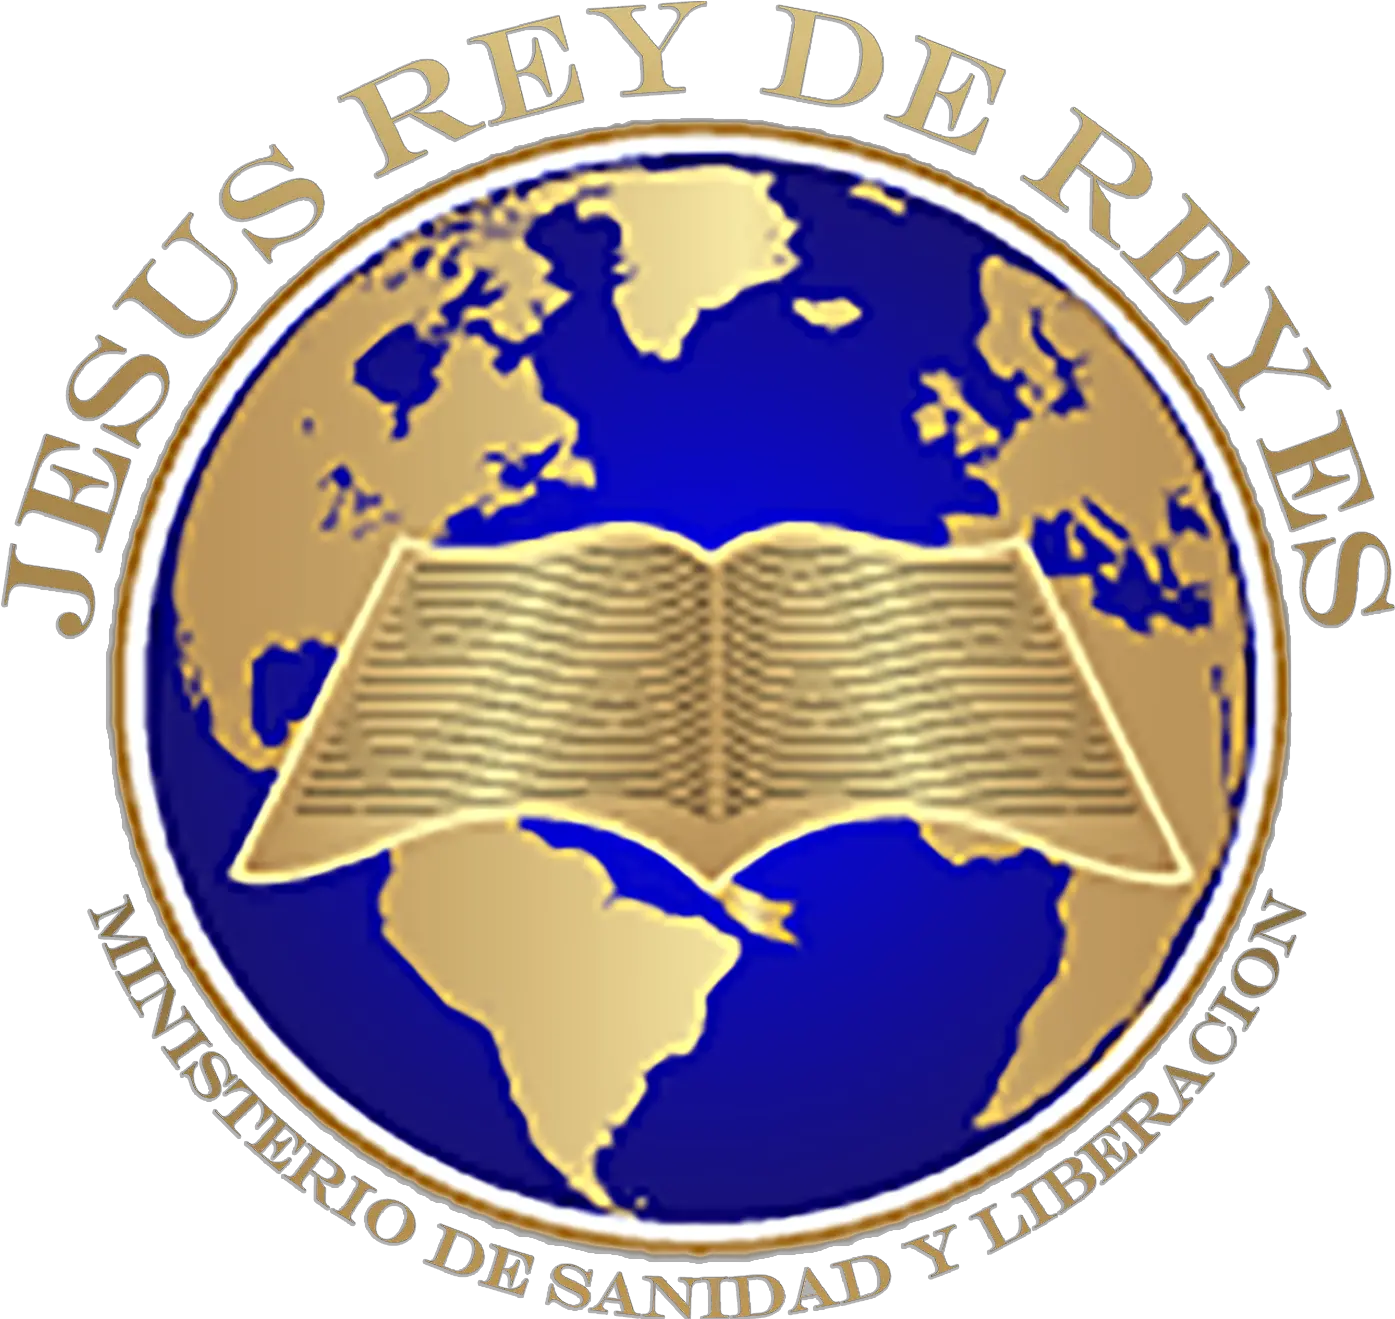 Akmal Logoroundtextchange2 U2013 Jesus Rey De Reyes Advec Png Jesucristo Logo